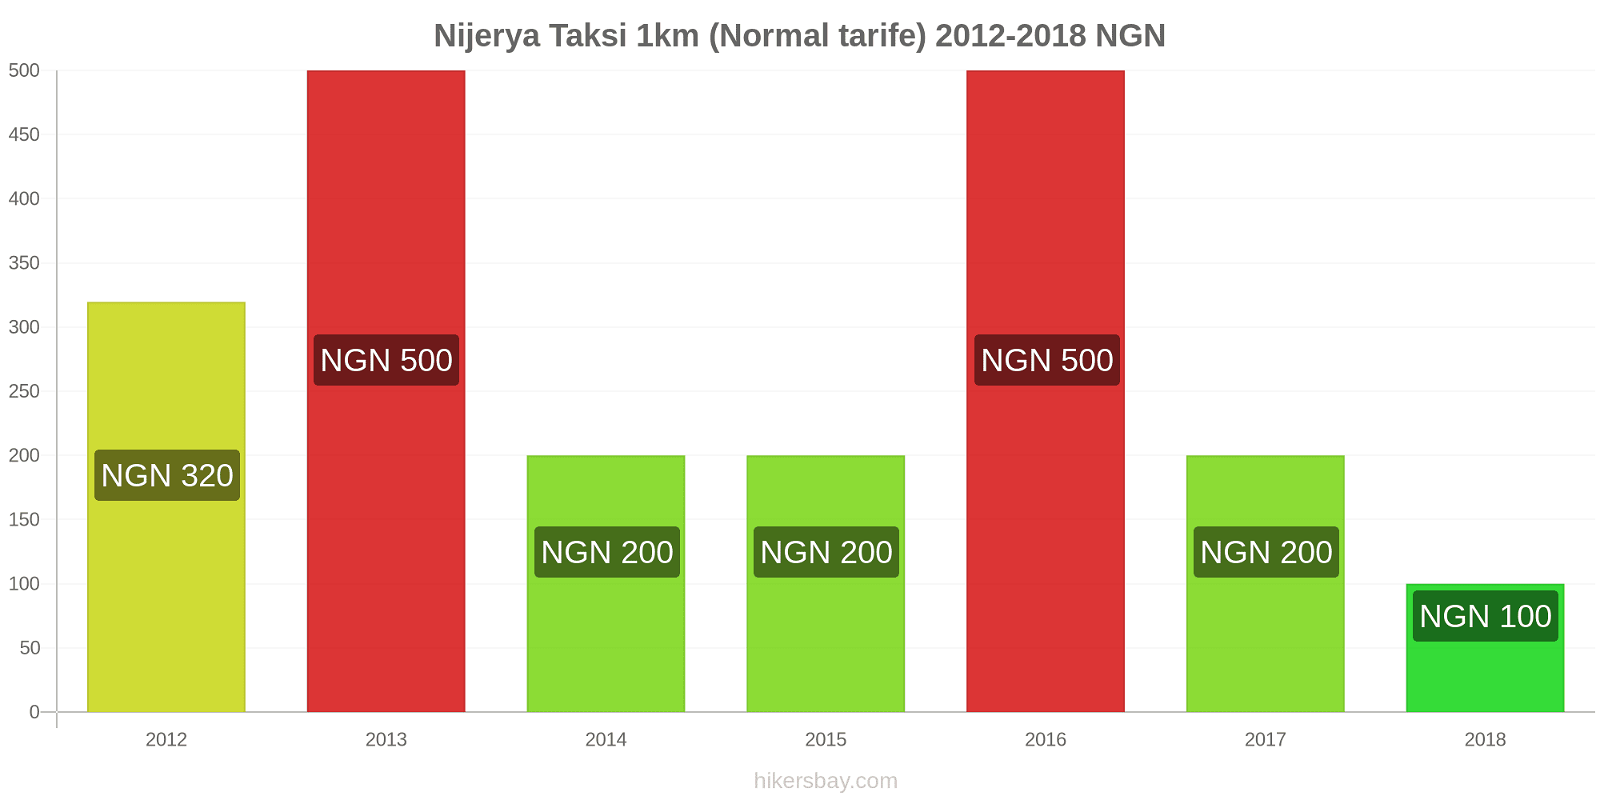 Nijerya fiyat değişiklikleri Taksi 1km (Normal tarife) hikersbay.com